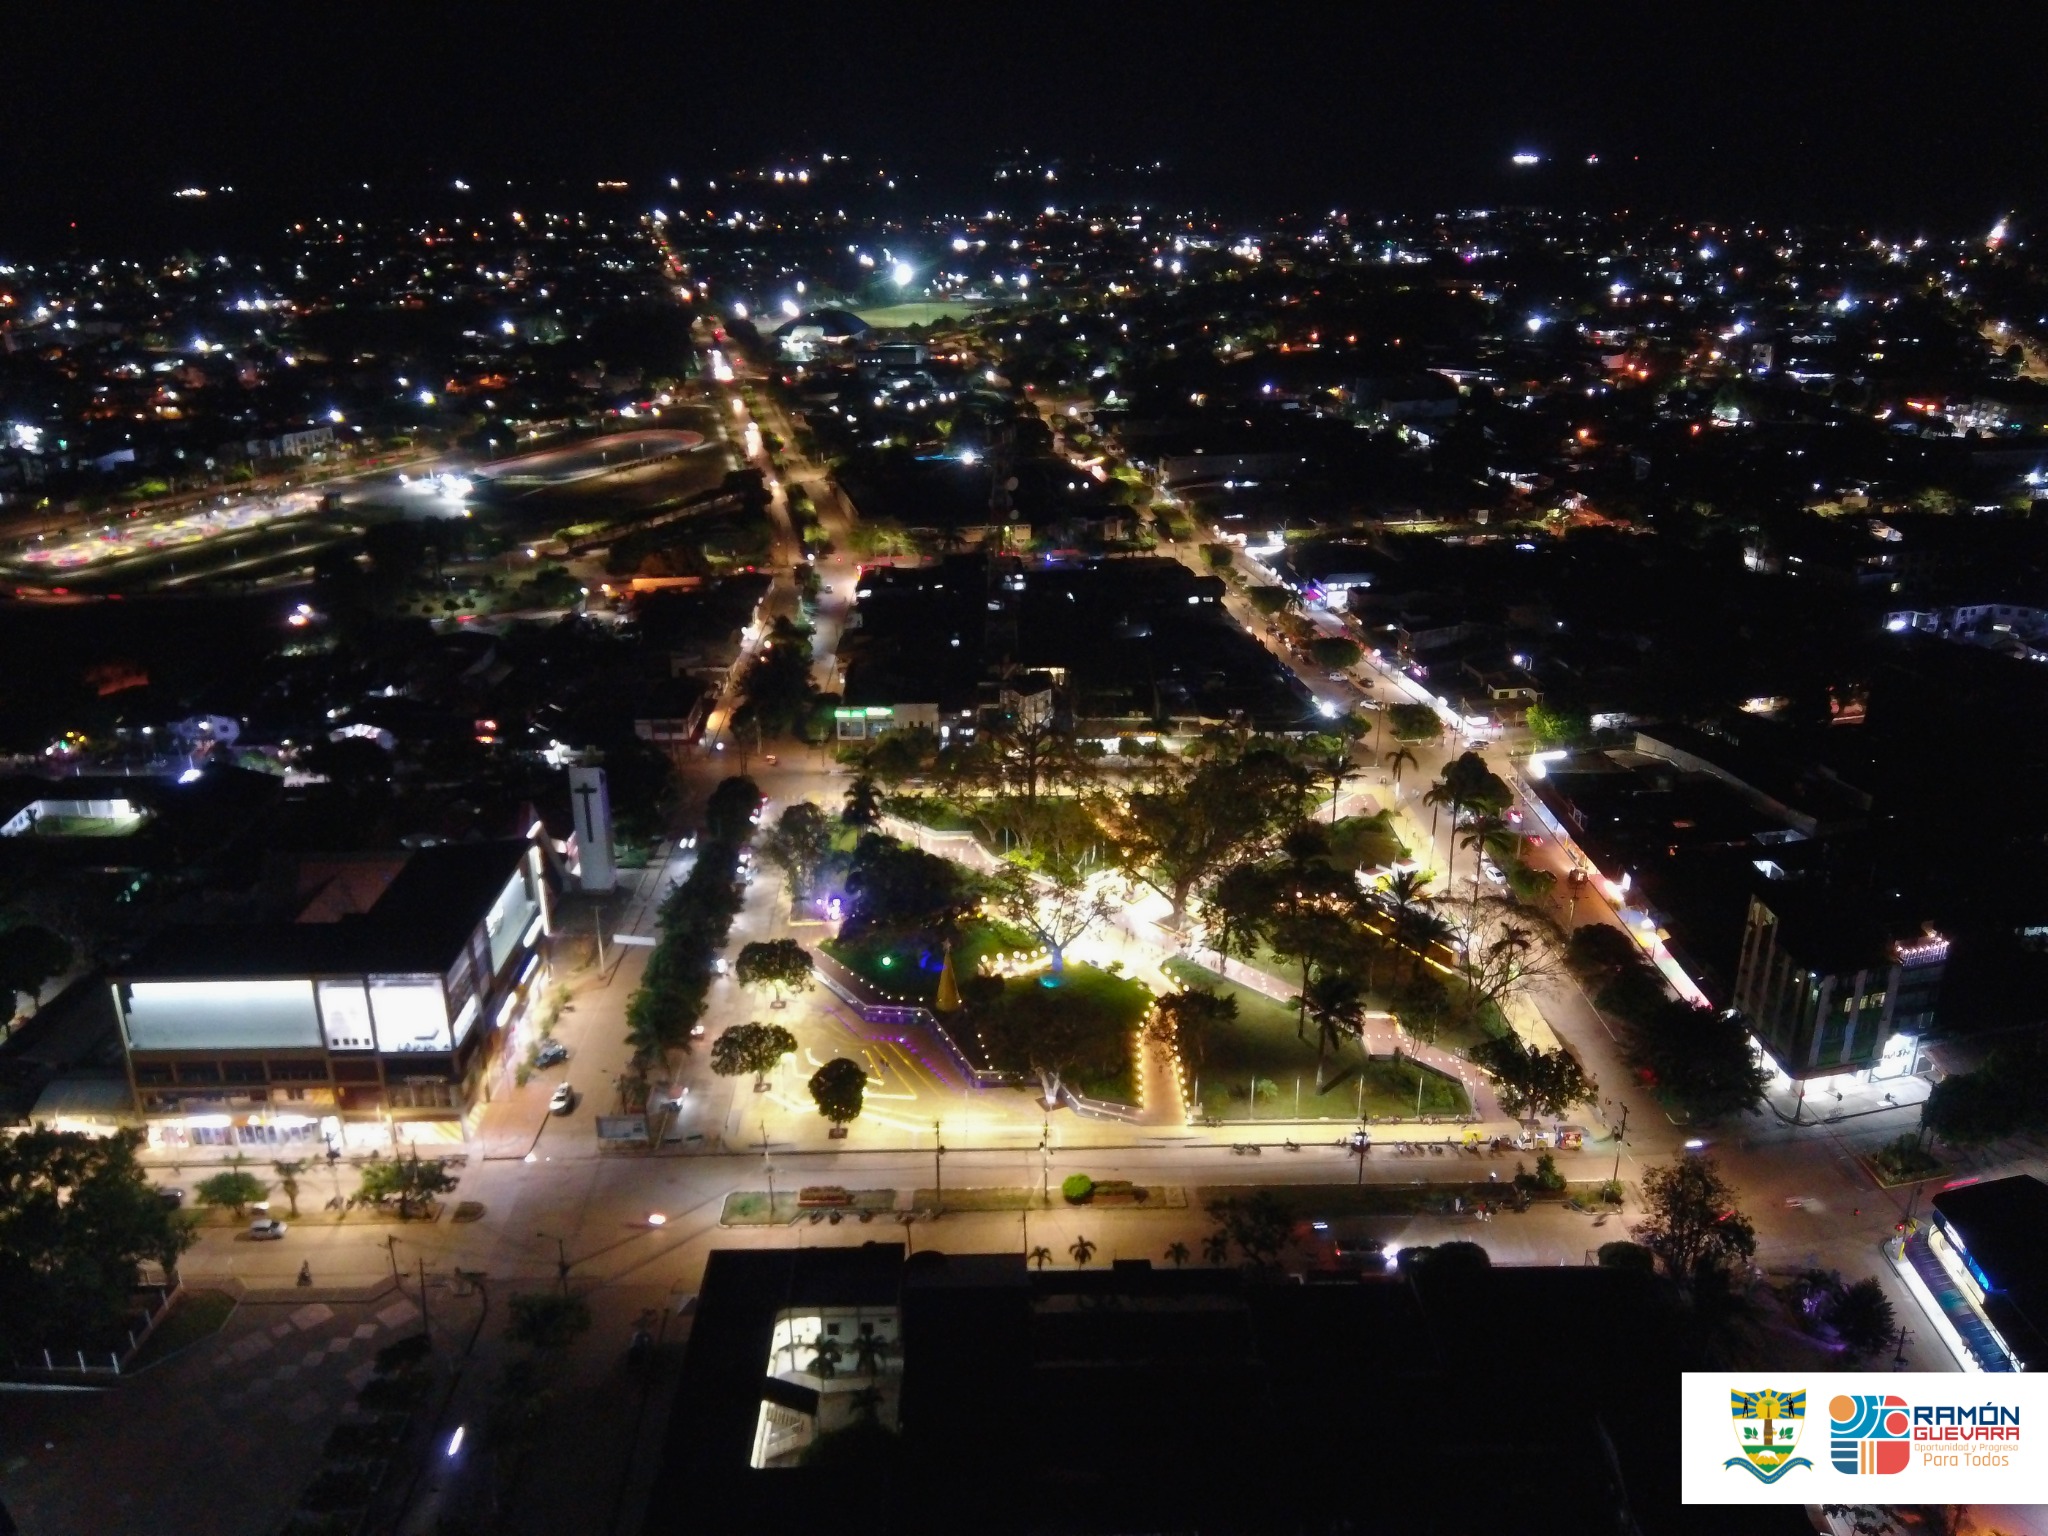 Vista aérea nocturna del parque La Constitución.jpg